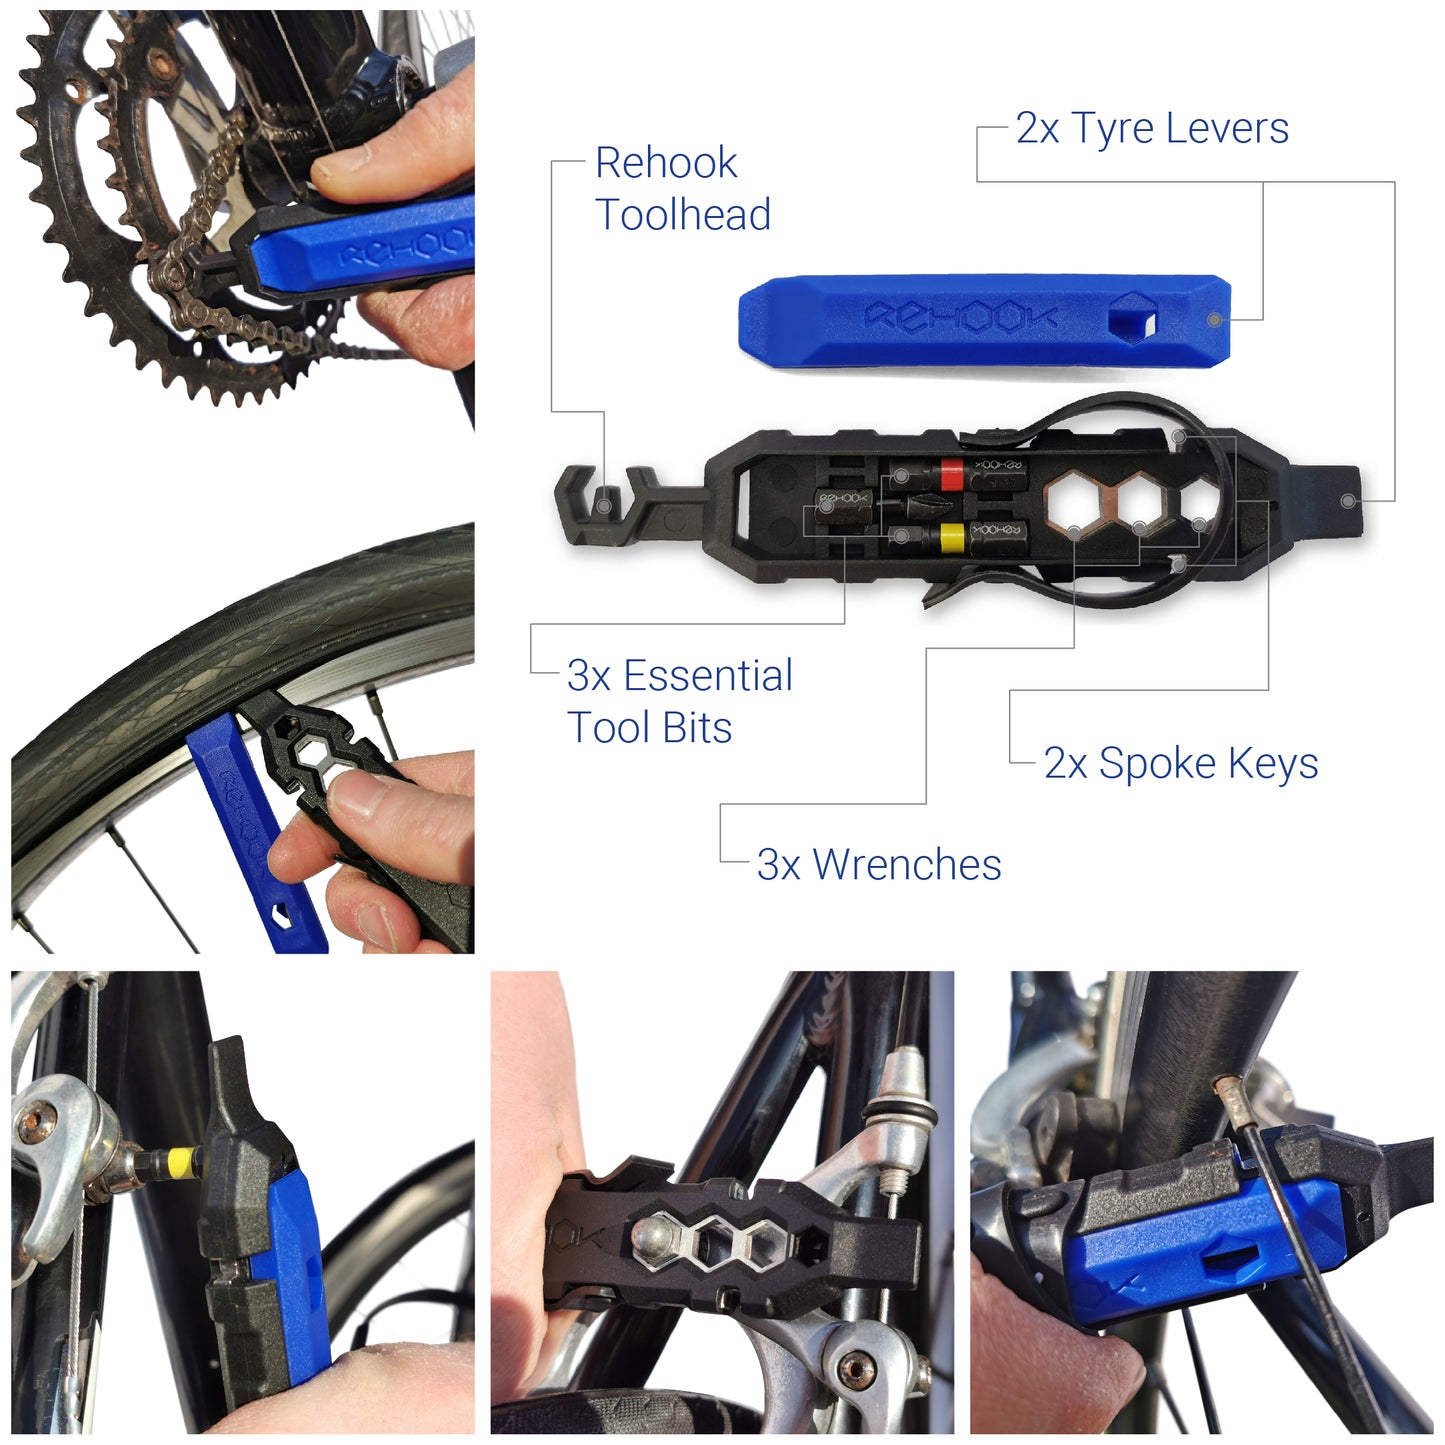 Rehook Emergency Bike Repair Kit